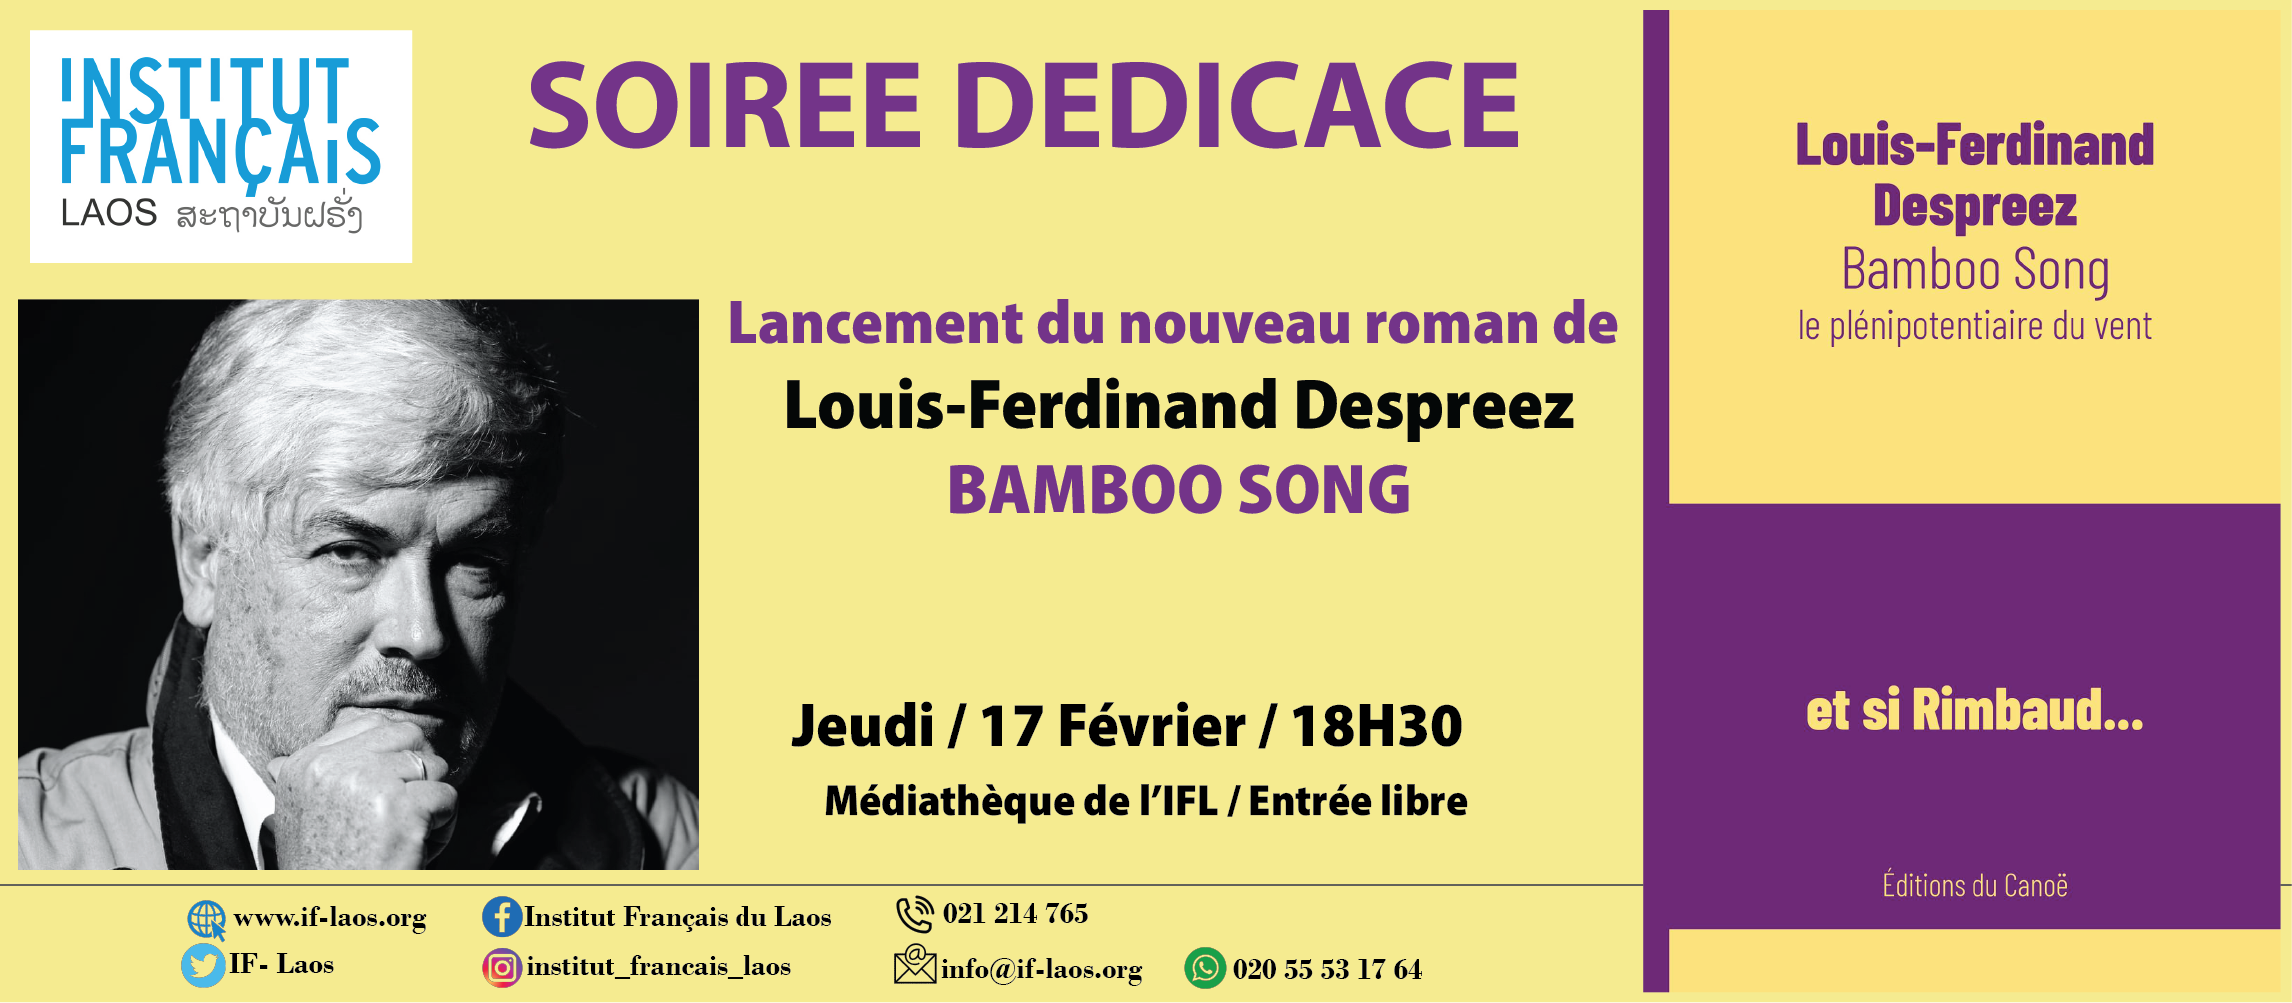 Soirée dédicace "Bamboo Song", Louis-Ferdinand Despreez